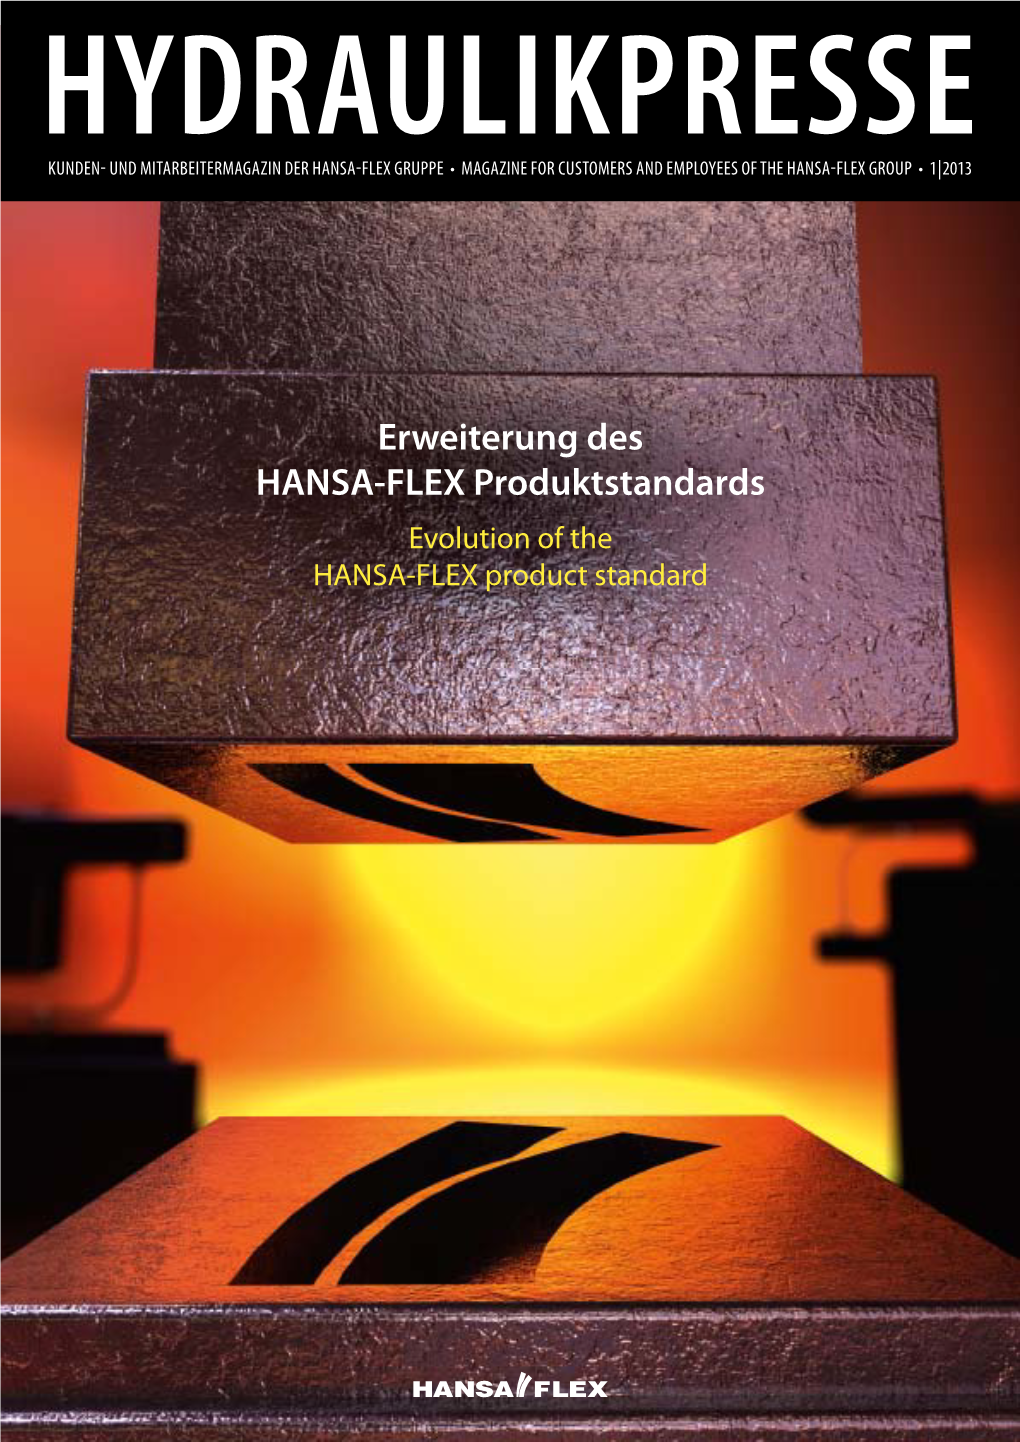 Erweiterung Des HANSA-FLEX Produktstandards Evolution of the HANSA-FLEX Product Standard HYDRAULIKPRESSE 1 | 2013 INHALT | CONTENT EDITORIAL EDITORIAL